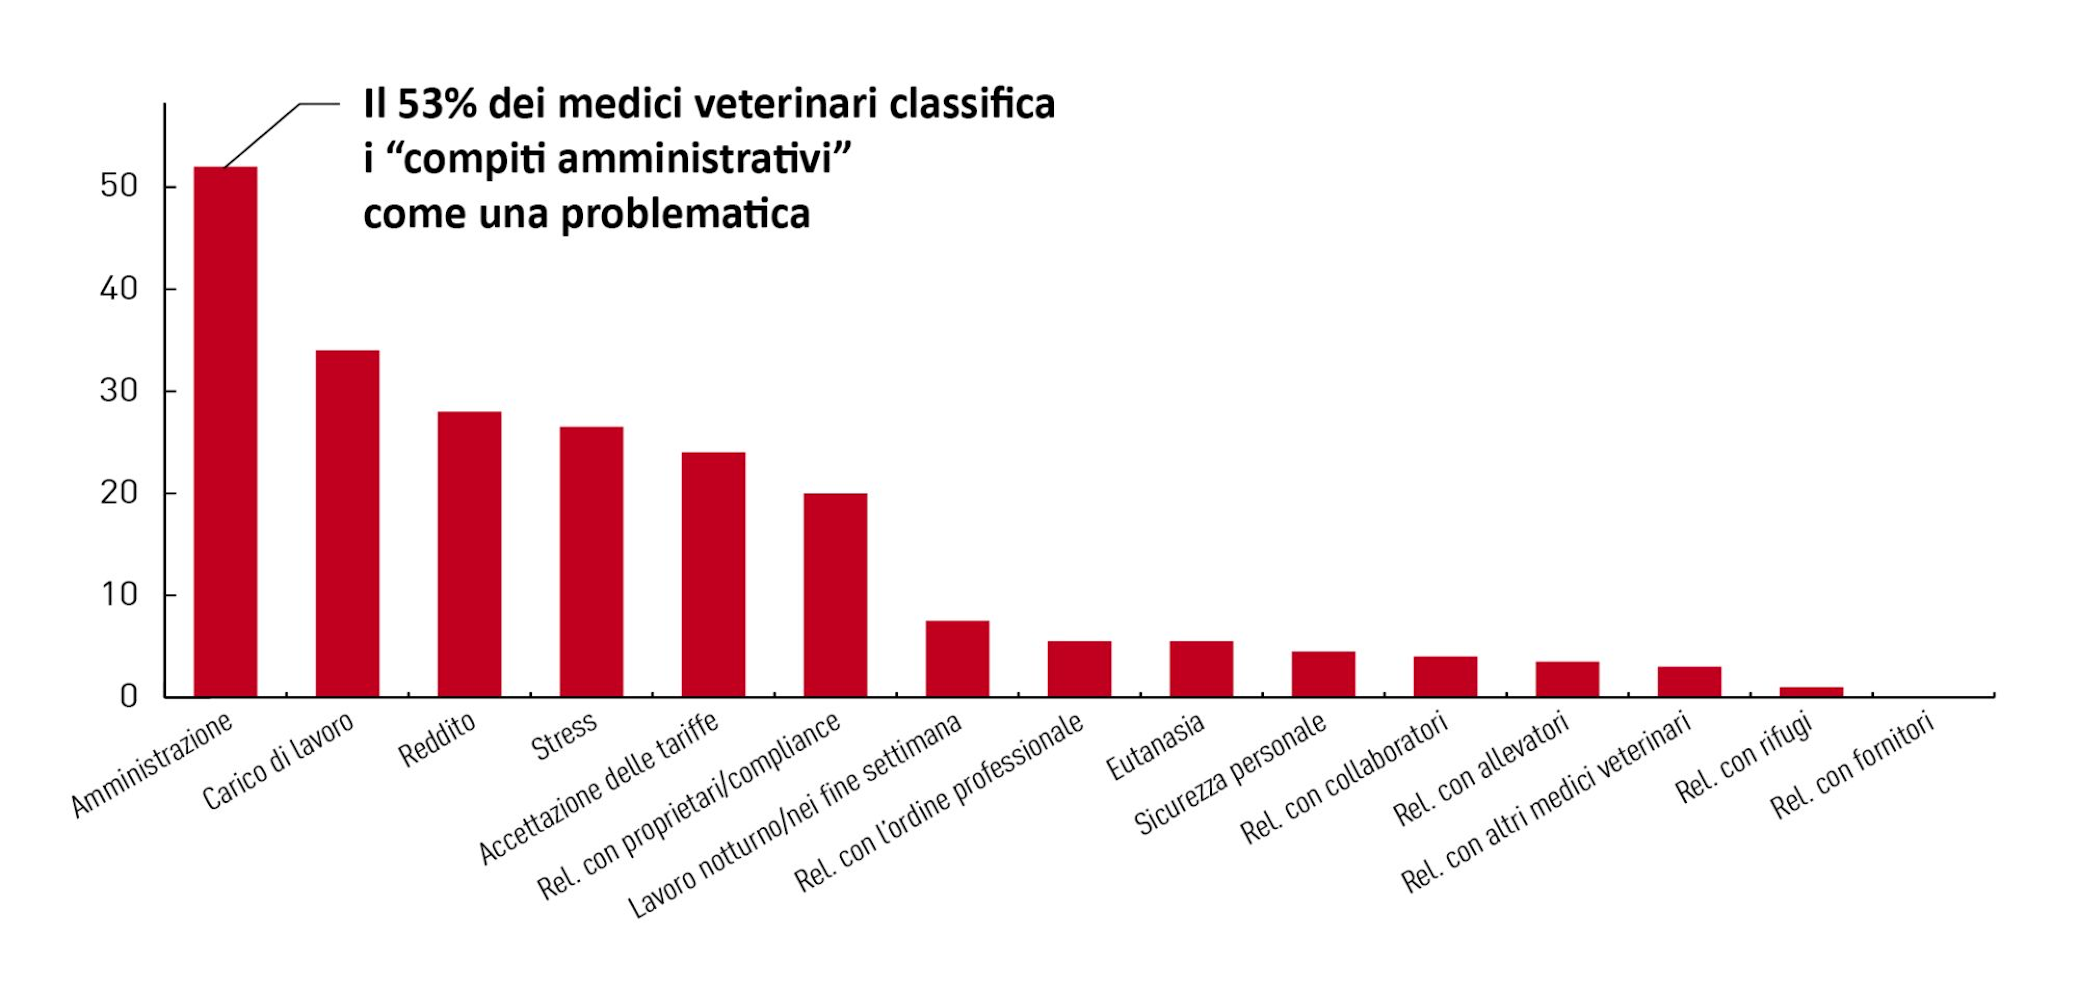 Grafico che mostra le problematiche principali per i medici veterinari identificate dall’indagine